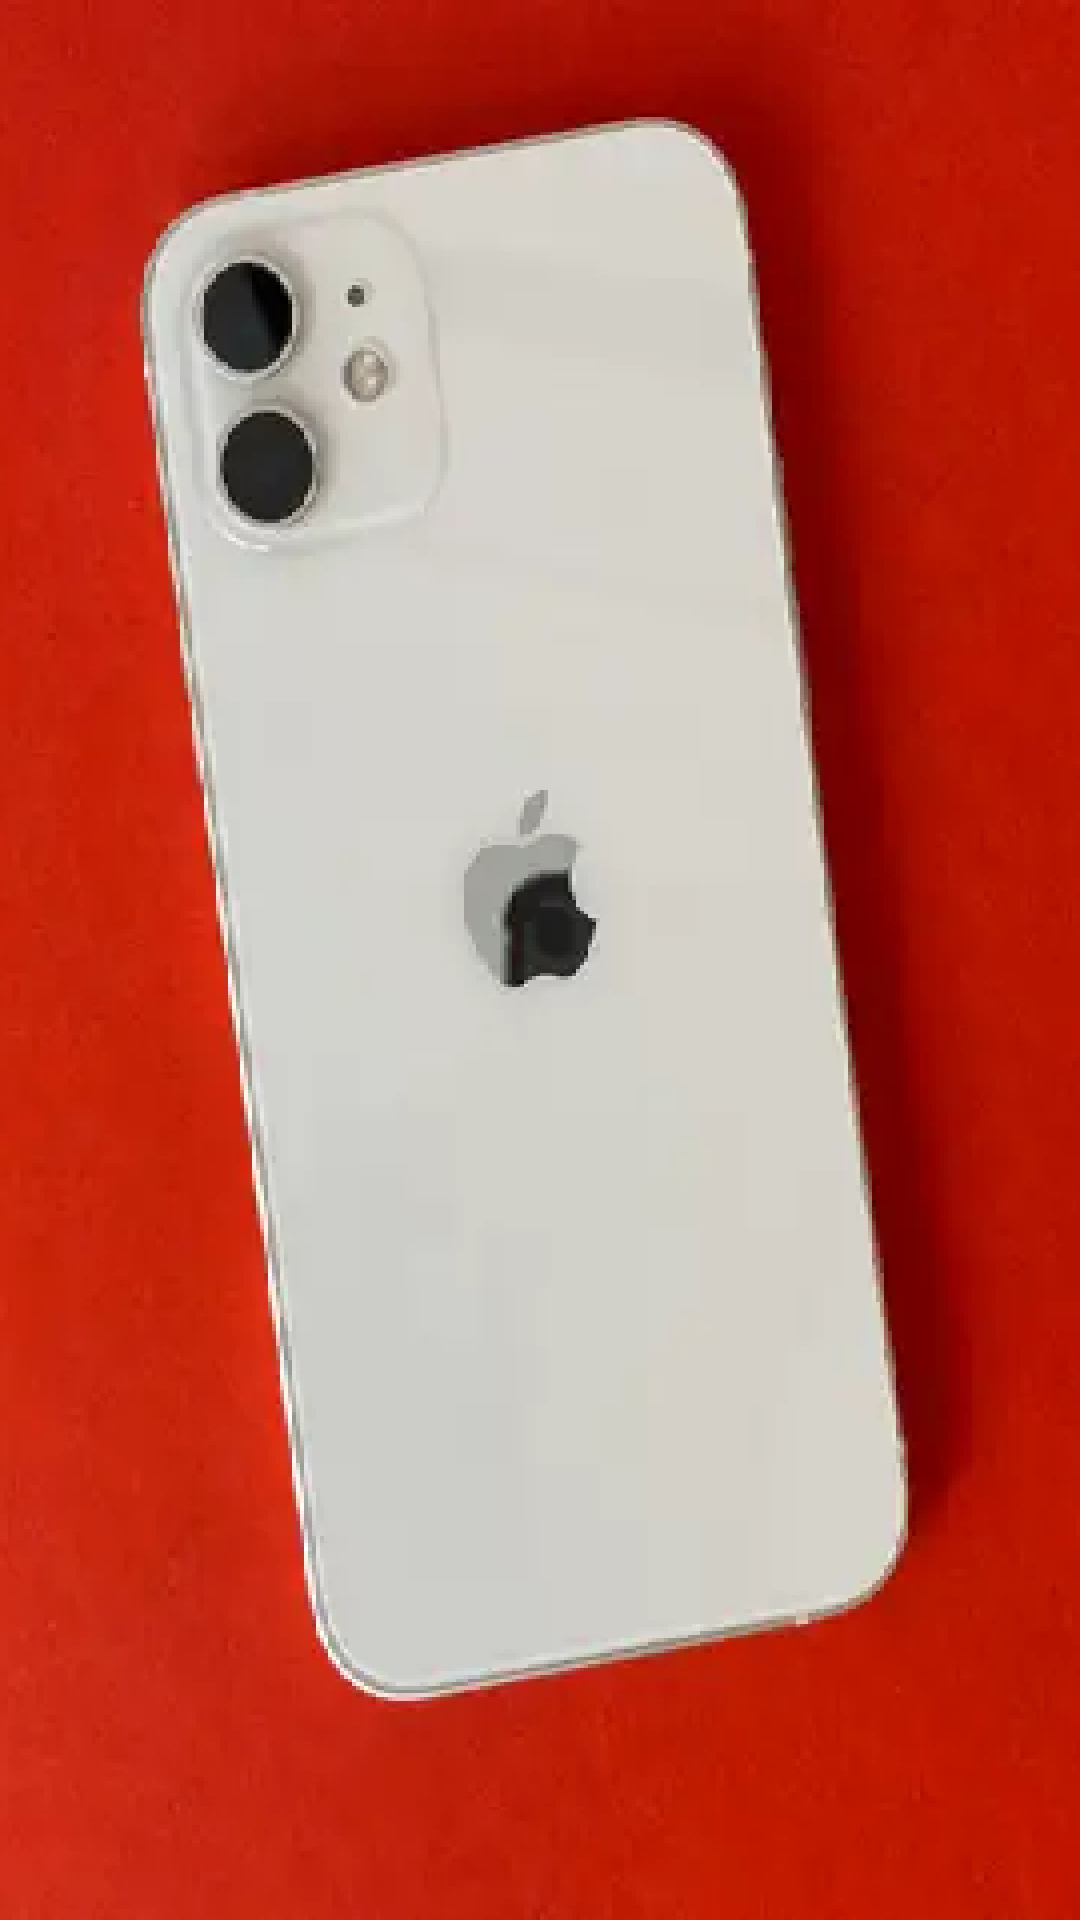 अमेरिका से आउट हो चुके ब्रांड ने चीन में Apple को दिया 'झटका', iPhone की सेल में&nbsp;भारी&nbsp;गिरावट